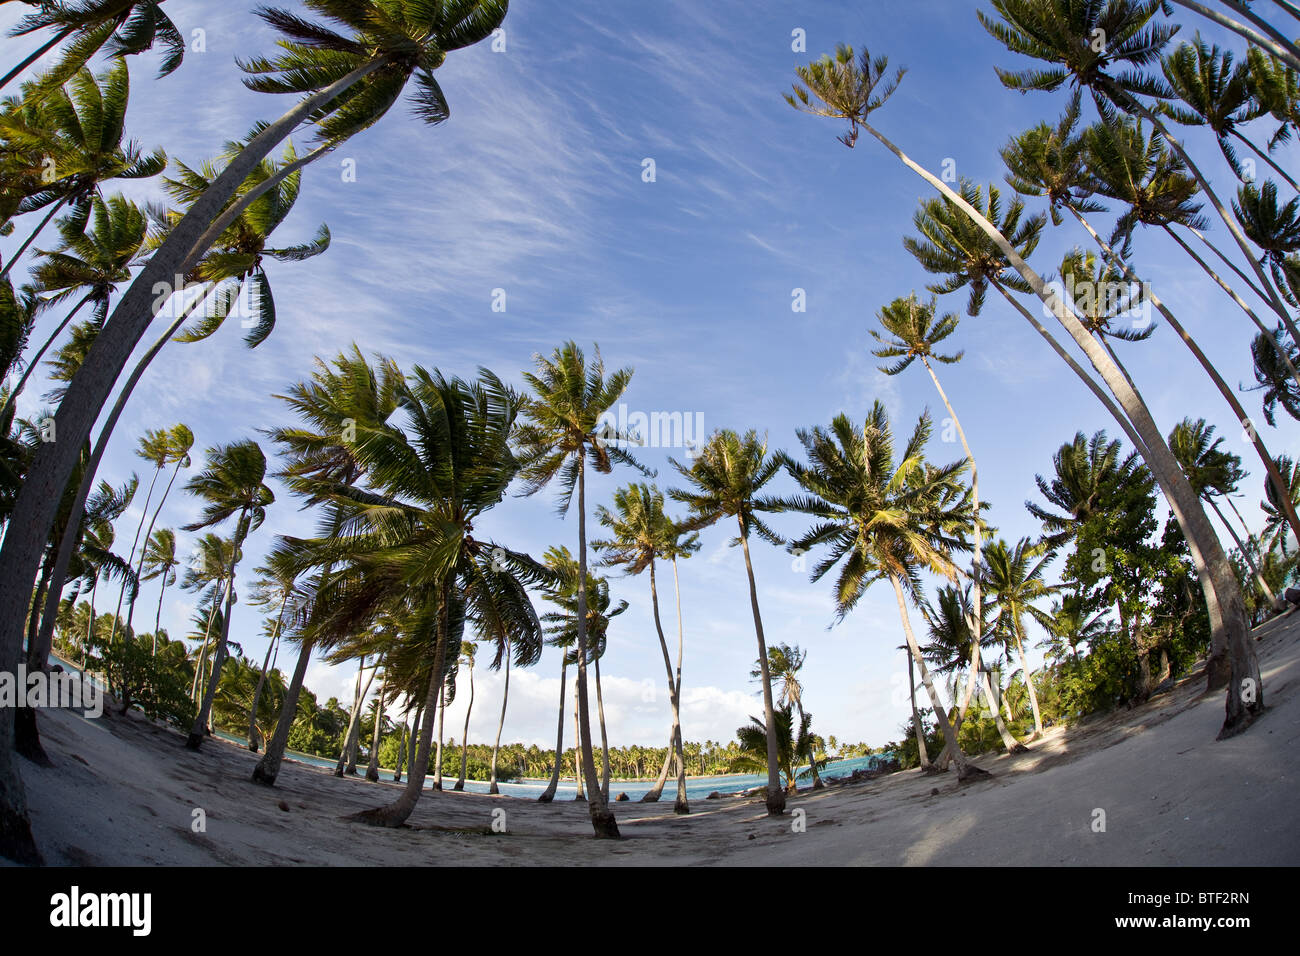 Altezza di palme di cocco Cocos nucifera, crescere su di un motu di sabbia sul bordo di una barriera corallina in Polinesia francese. Foto Stock